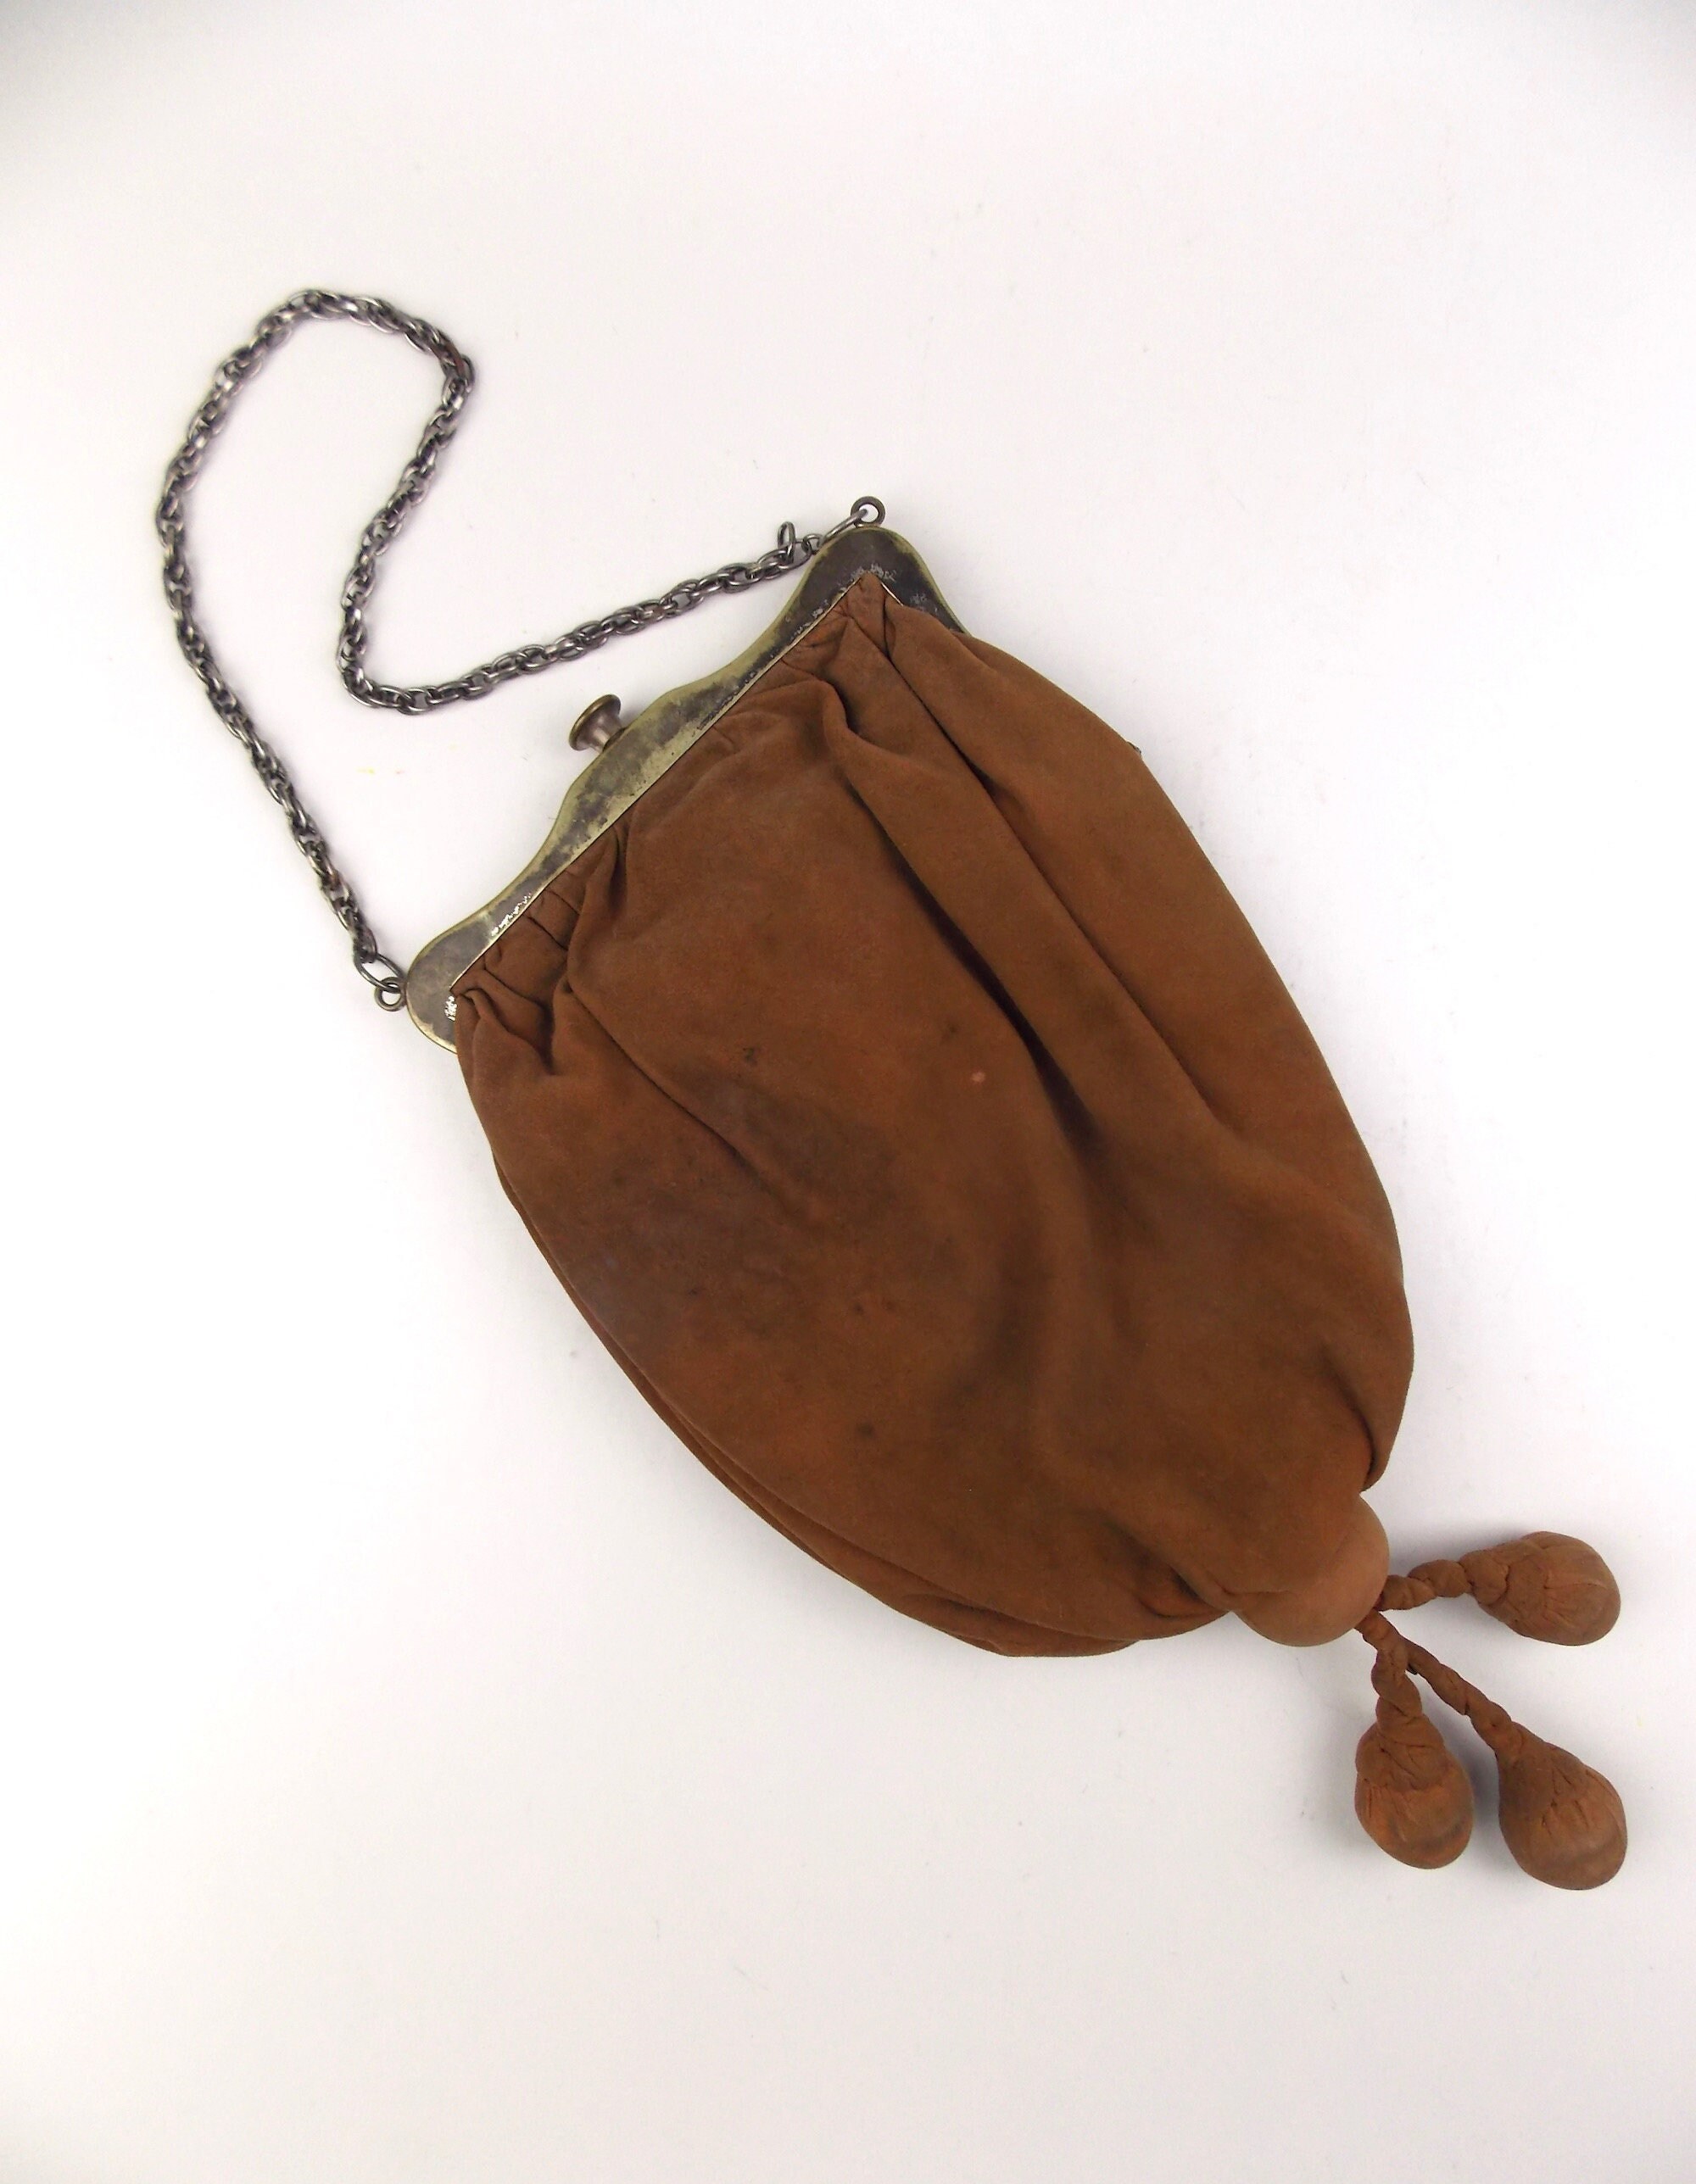 Wooden Handbag Wood Purse Vegan Leather 6 Colors to choose from| Wooden Vegan Handbag Tassen & portemonnees Handtassen Handtassen met kort handvat 